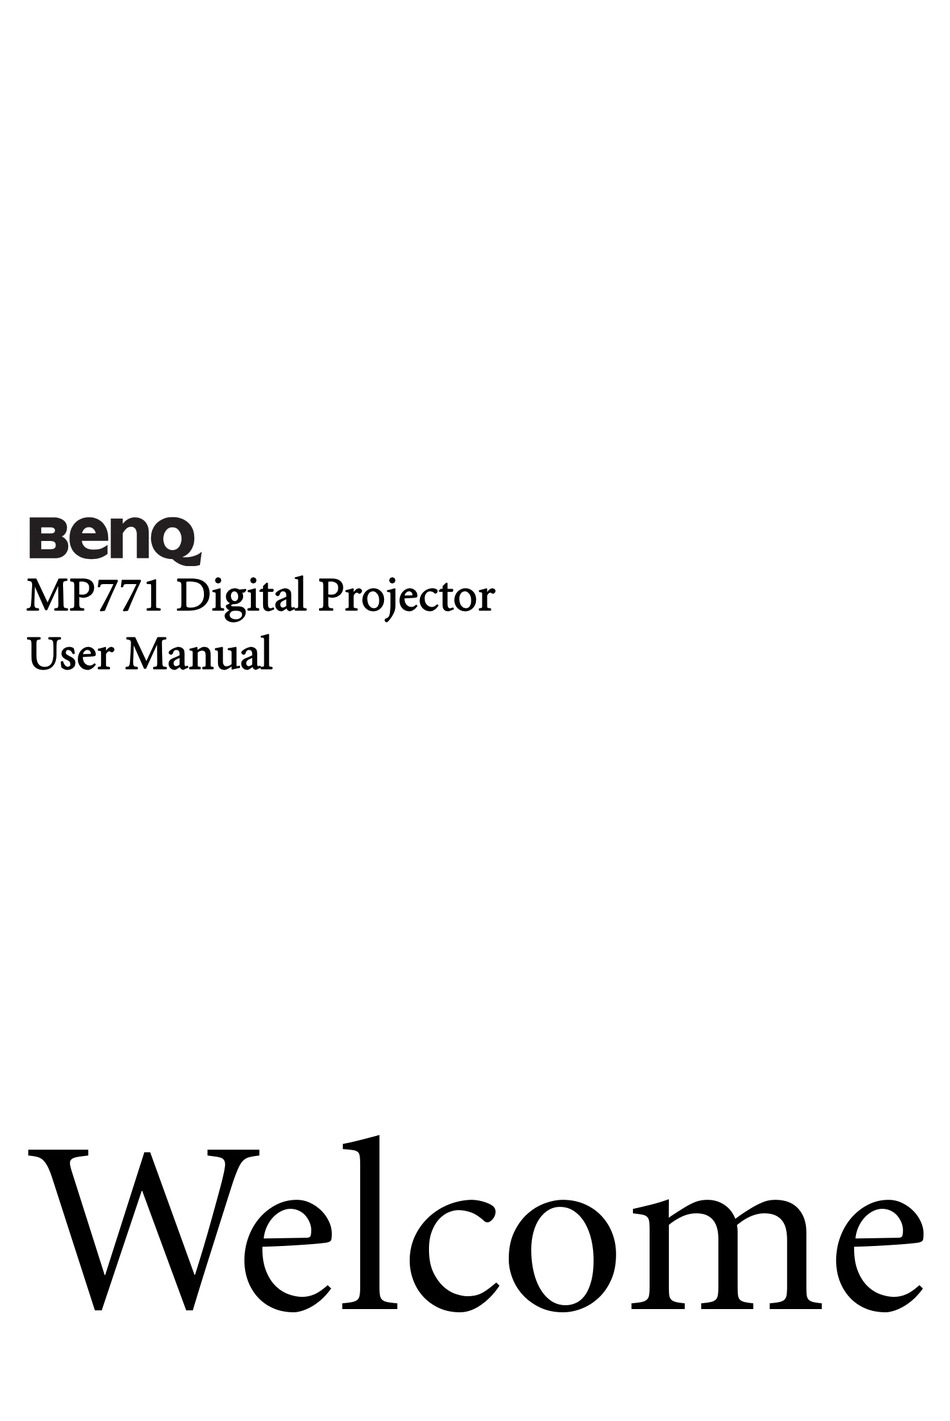 BenQ CD DISCO BENQ MP771 DIGITAL PROJECTOR  USER MANUAL 